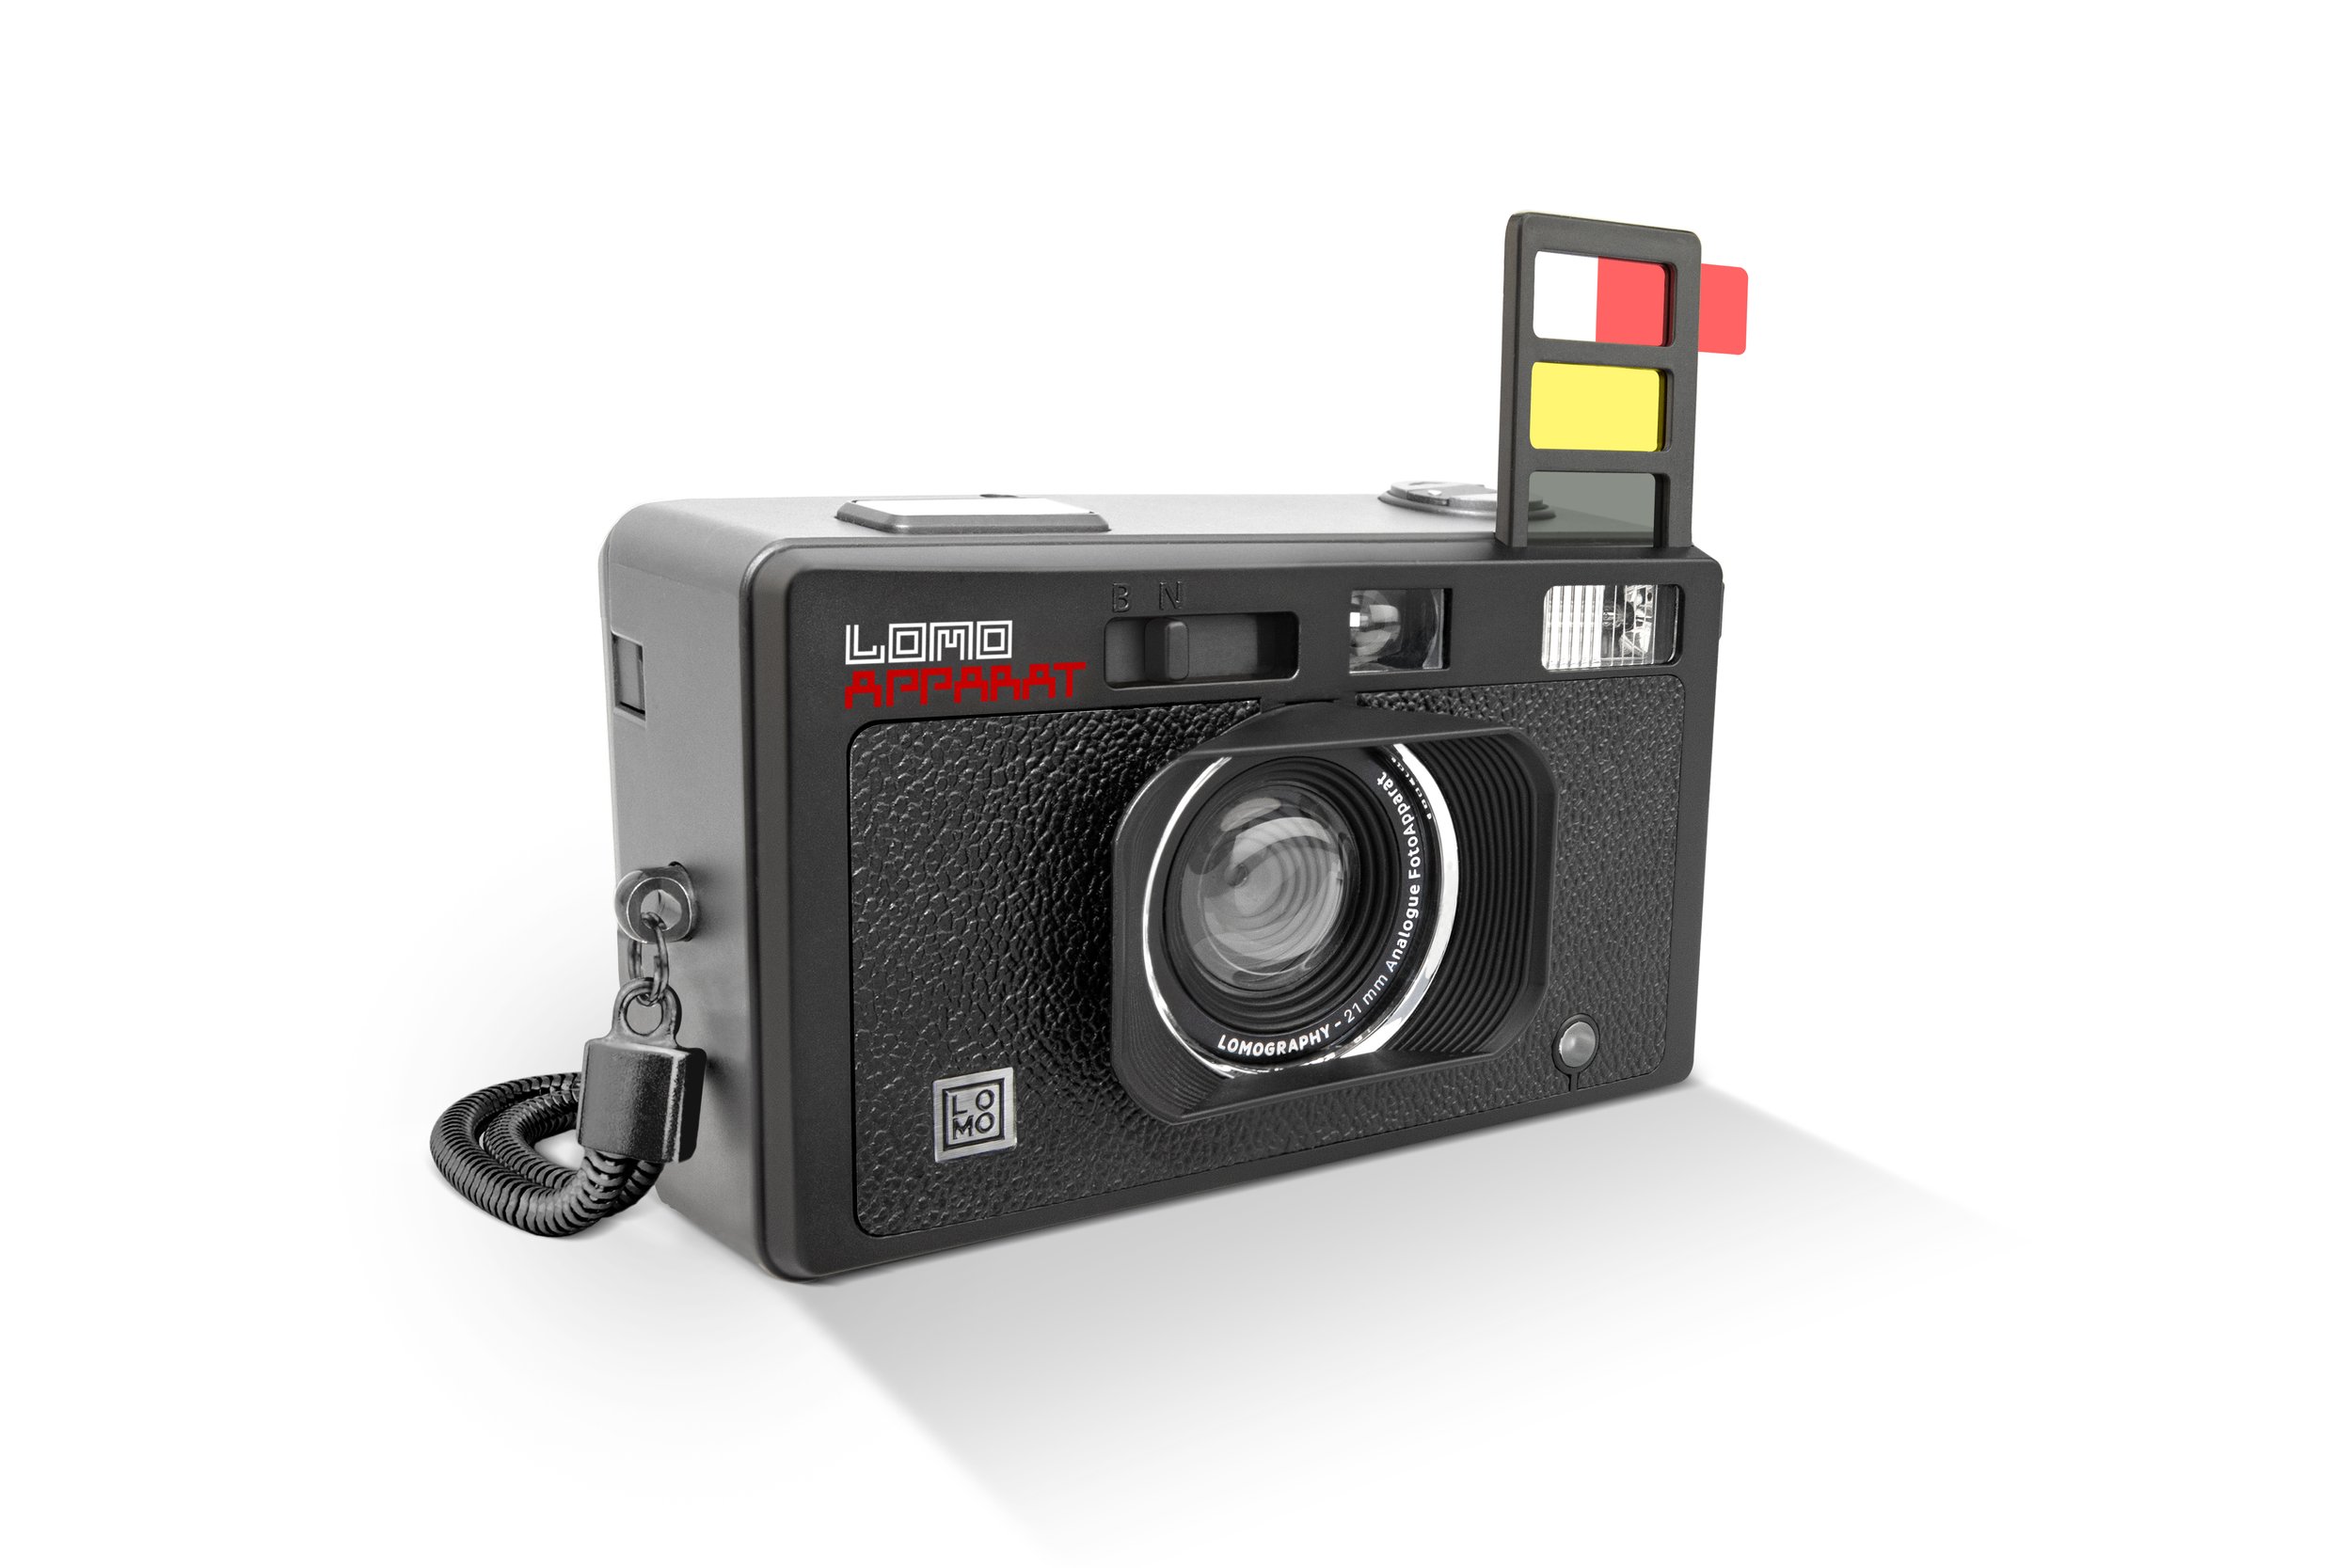 Lomography ha lanzado nuevos modelos de cámaras desechables